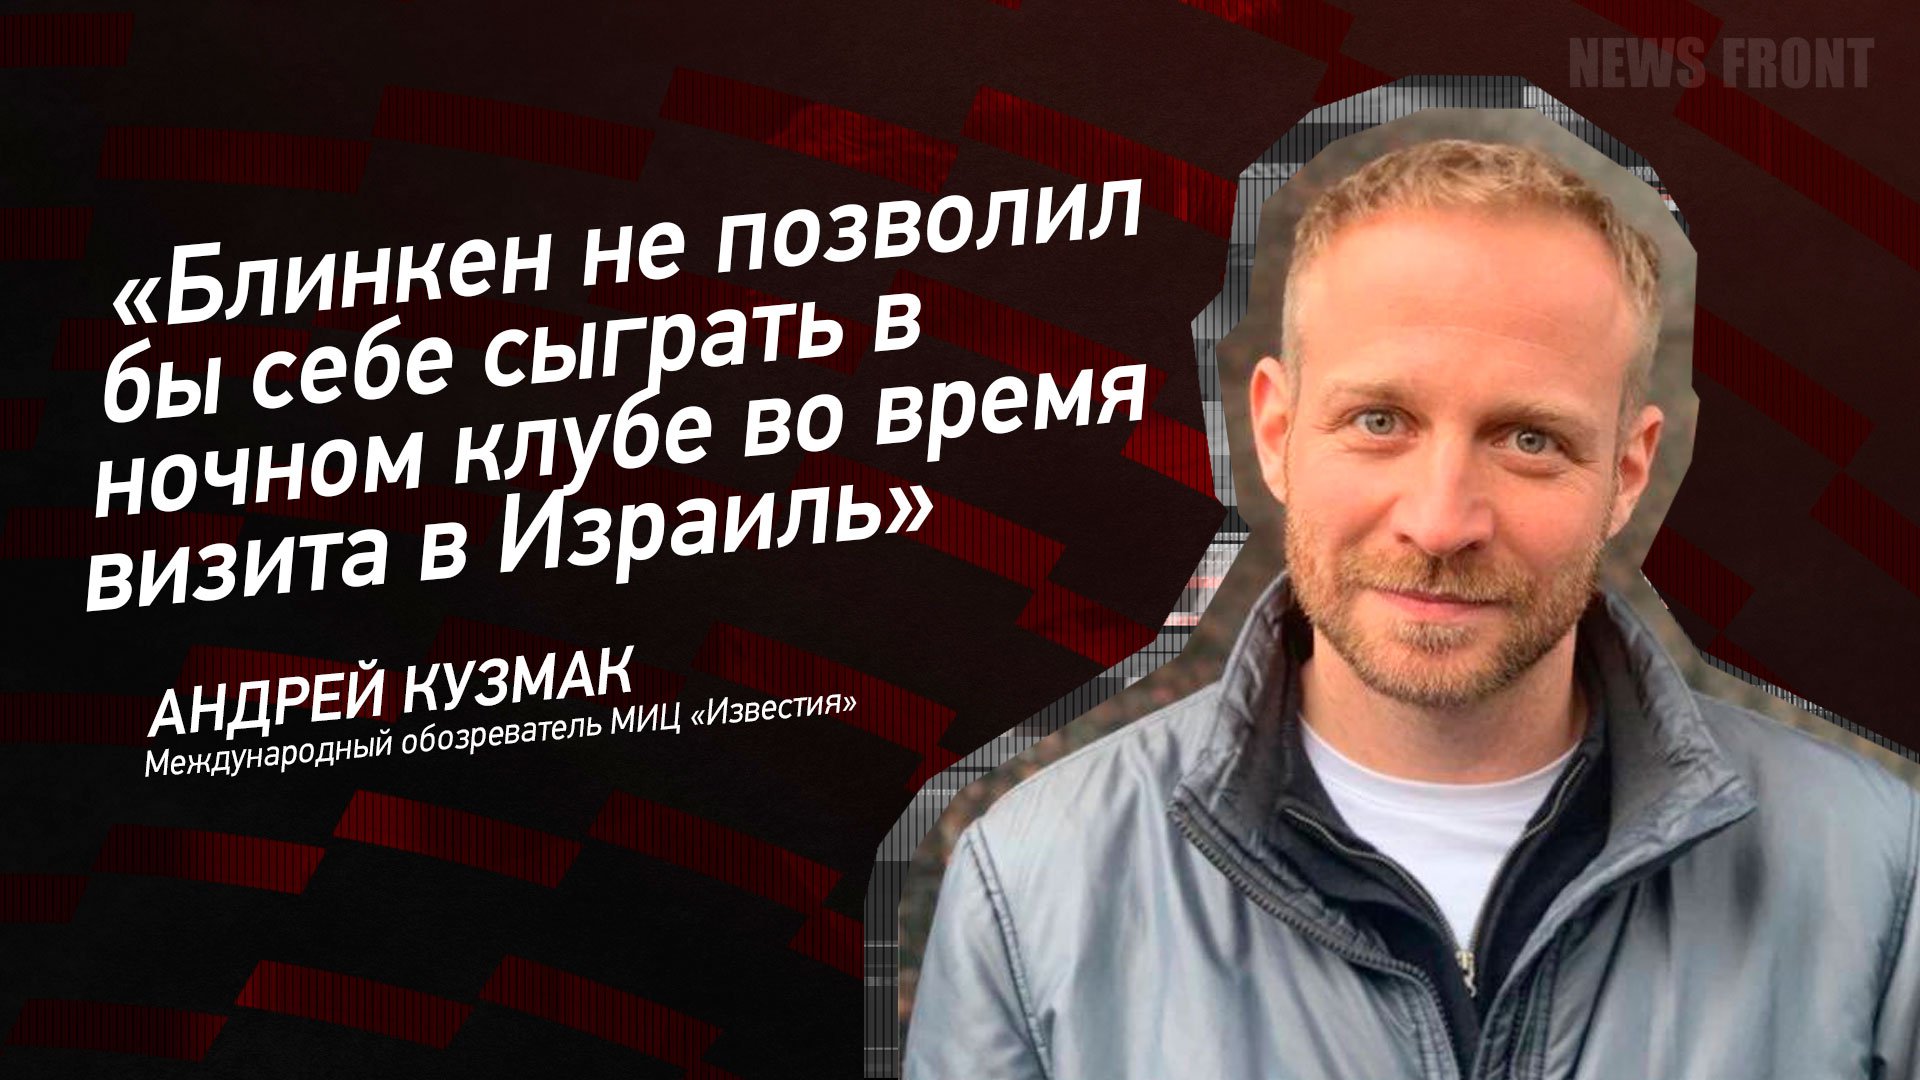 "Блинкен не позволил бы себе сыграть в ночном клубе во время визита в Израиль" - Андрей Кузмак